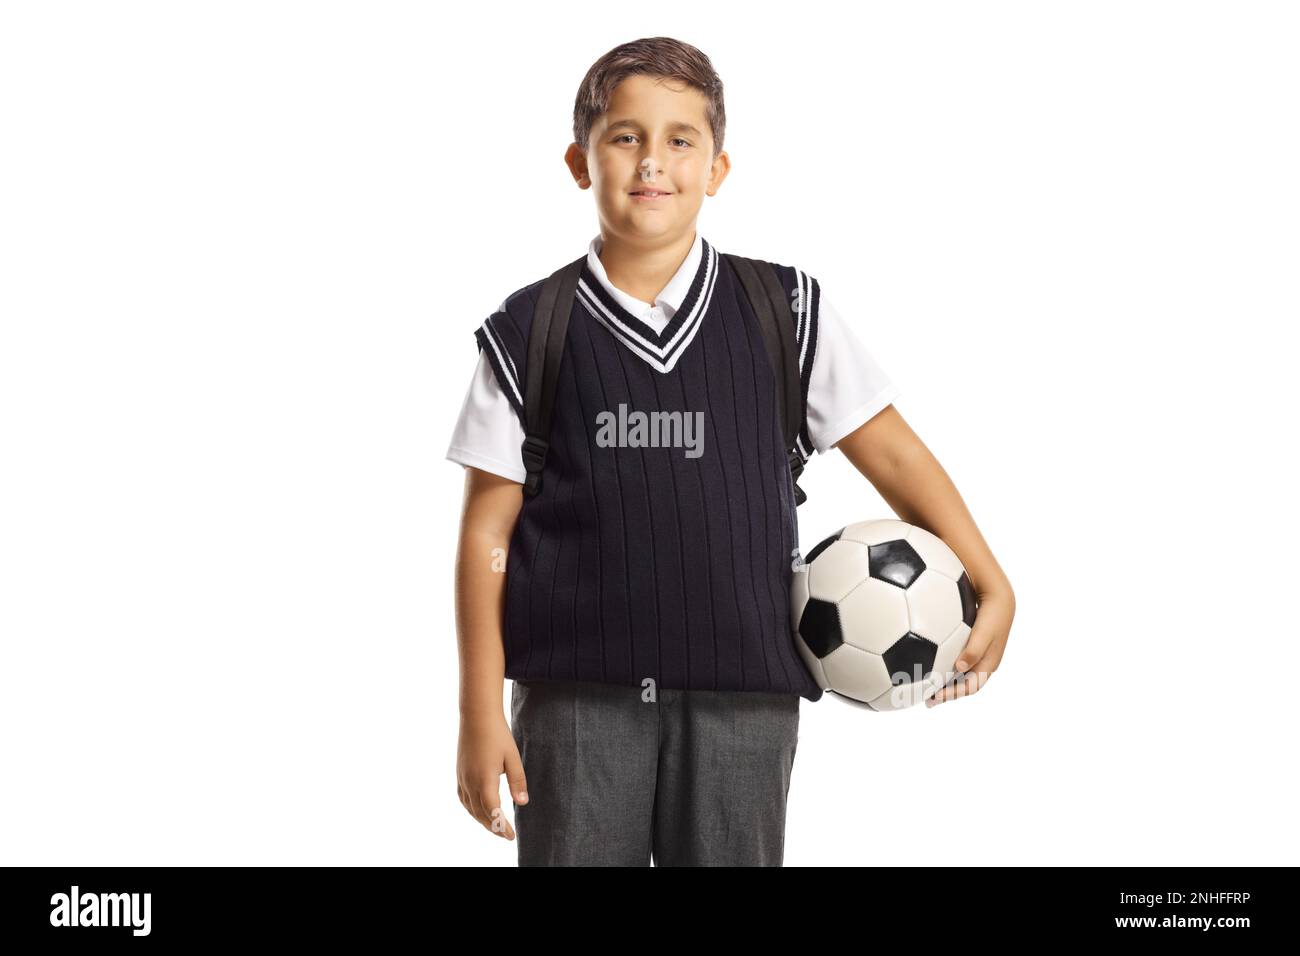 Garçon portant un uniforme scolaire et tenant un ballon de football isolé sur fond blanc Banque D'Images